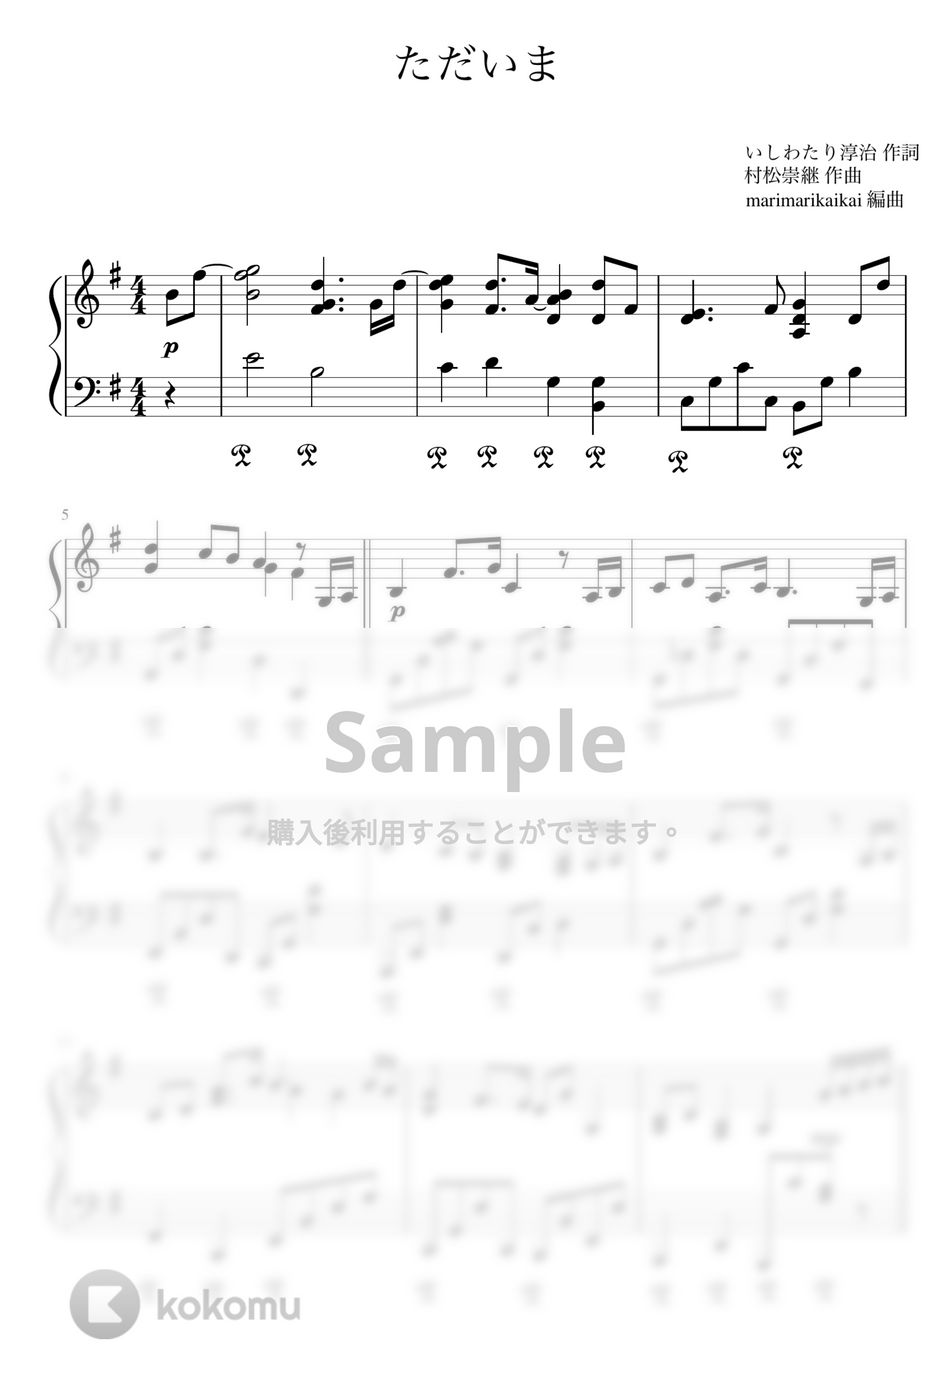 手嶌 葵 - ただいま (ピアノ) by marimarikaikai